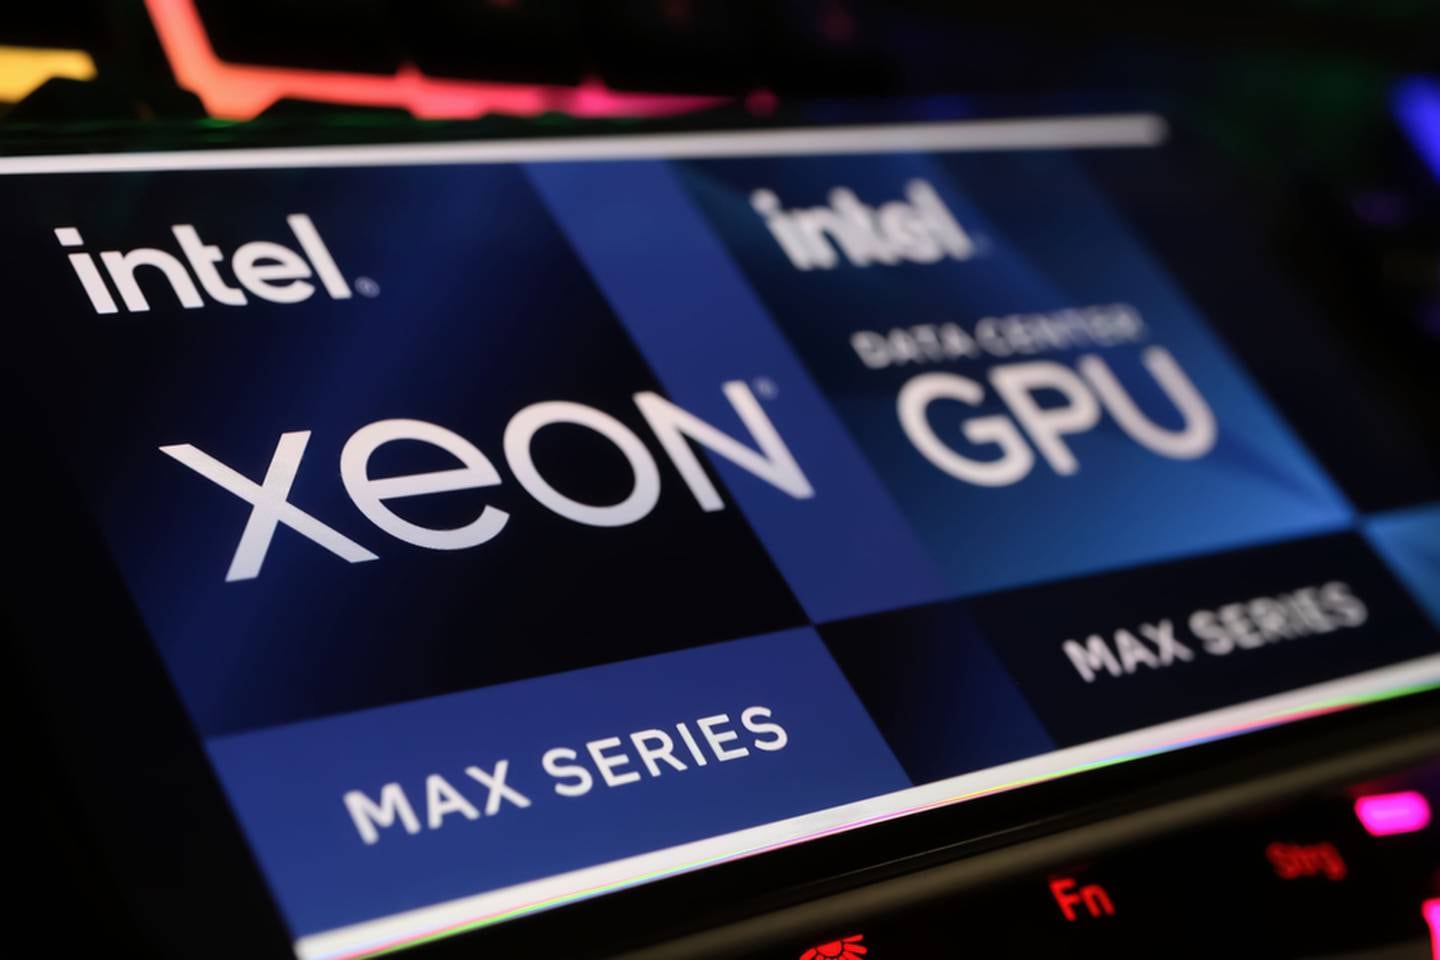 Intel prueba y fabrica la familia de microprocesadores Xeon en la planta de prueba y ensamblaje ubicada en Costa Rica. Estos son utilizados para el desarrollo de tecnologías de Inteligencia Artificial.